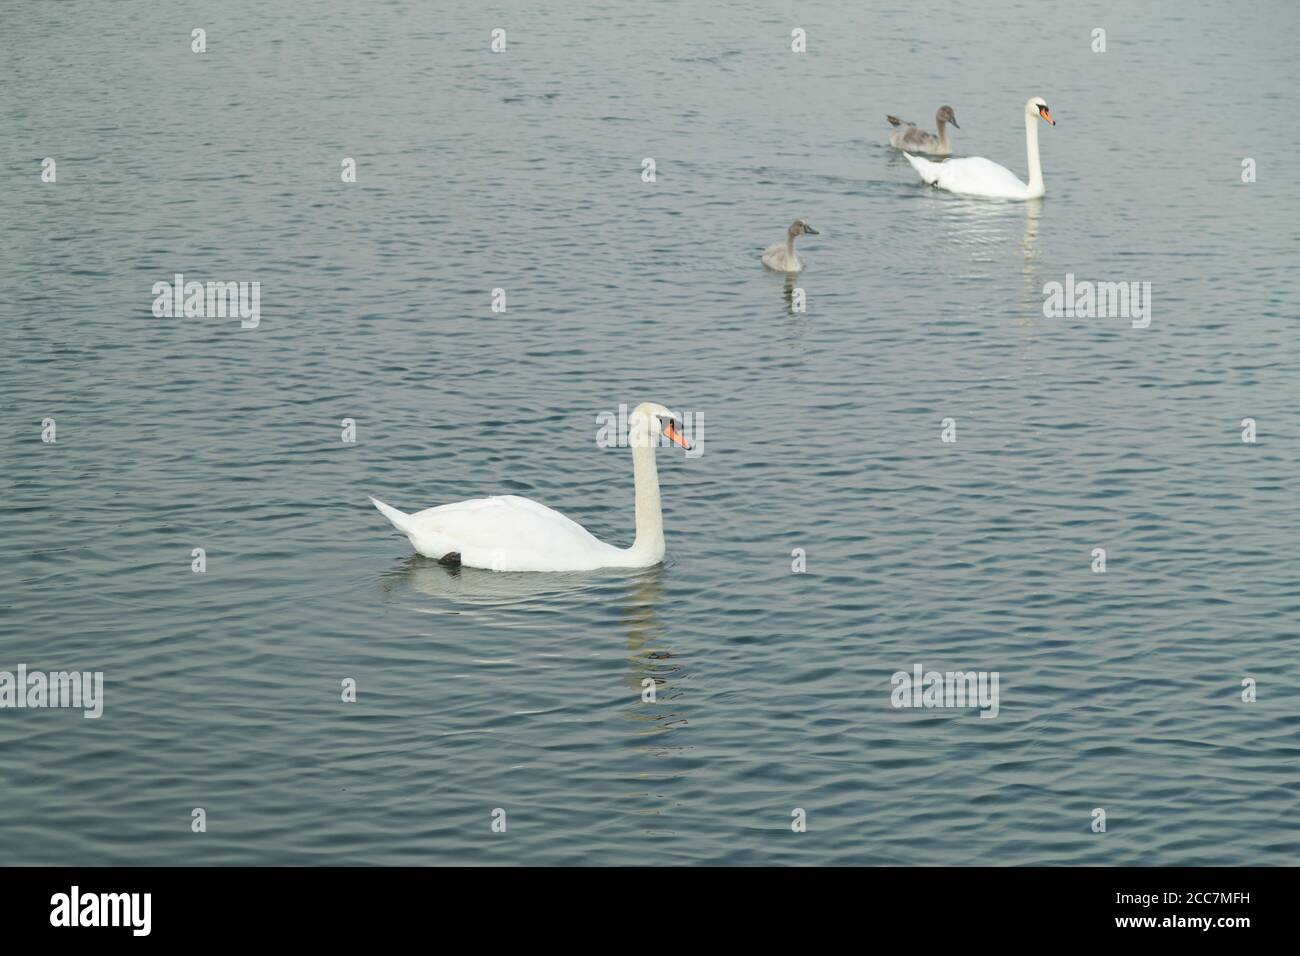 famille des cygnes sur le lac, parents avec deux jeunes cygnes nageant confortablement sur le lac, atmosphère calme agréable, beaucoup d'amour et de chaleur, le jour, personne Banque D'Images